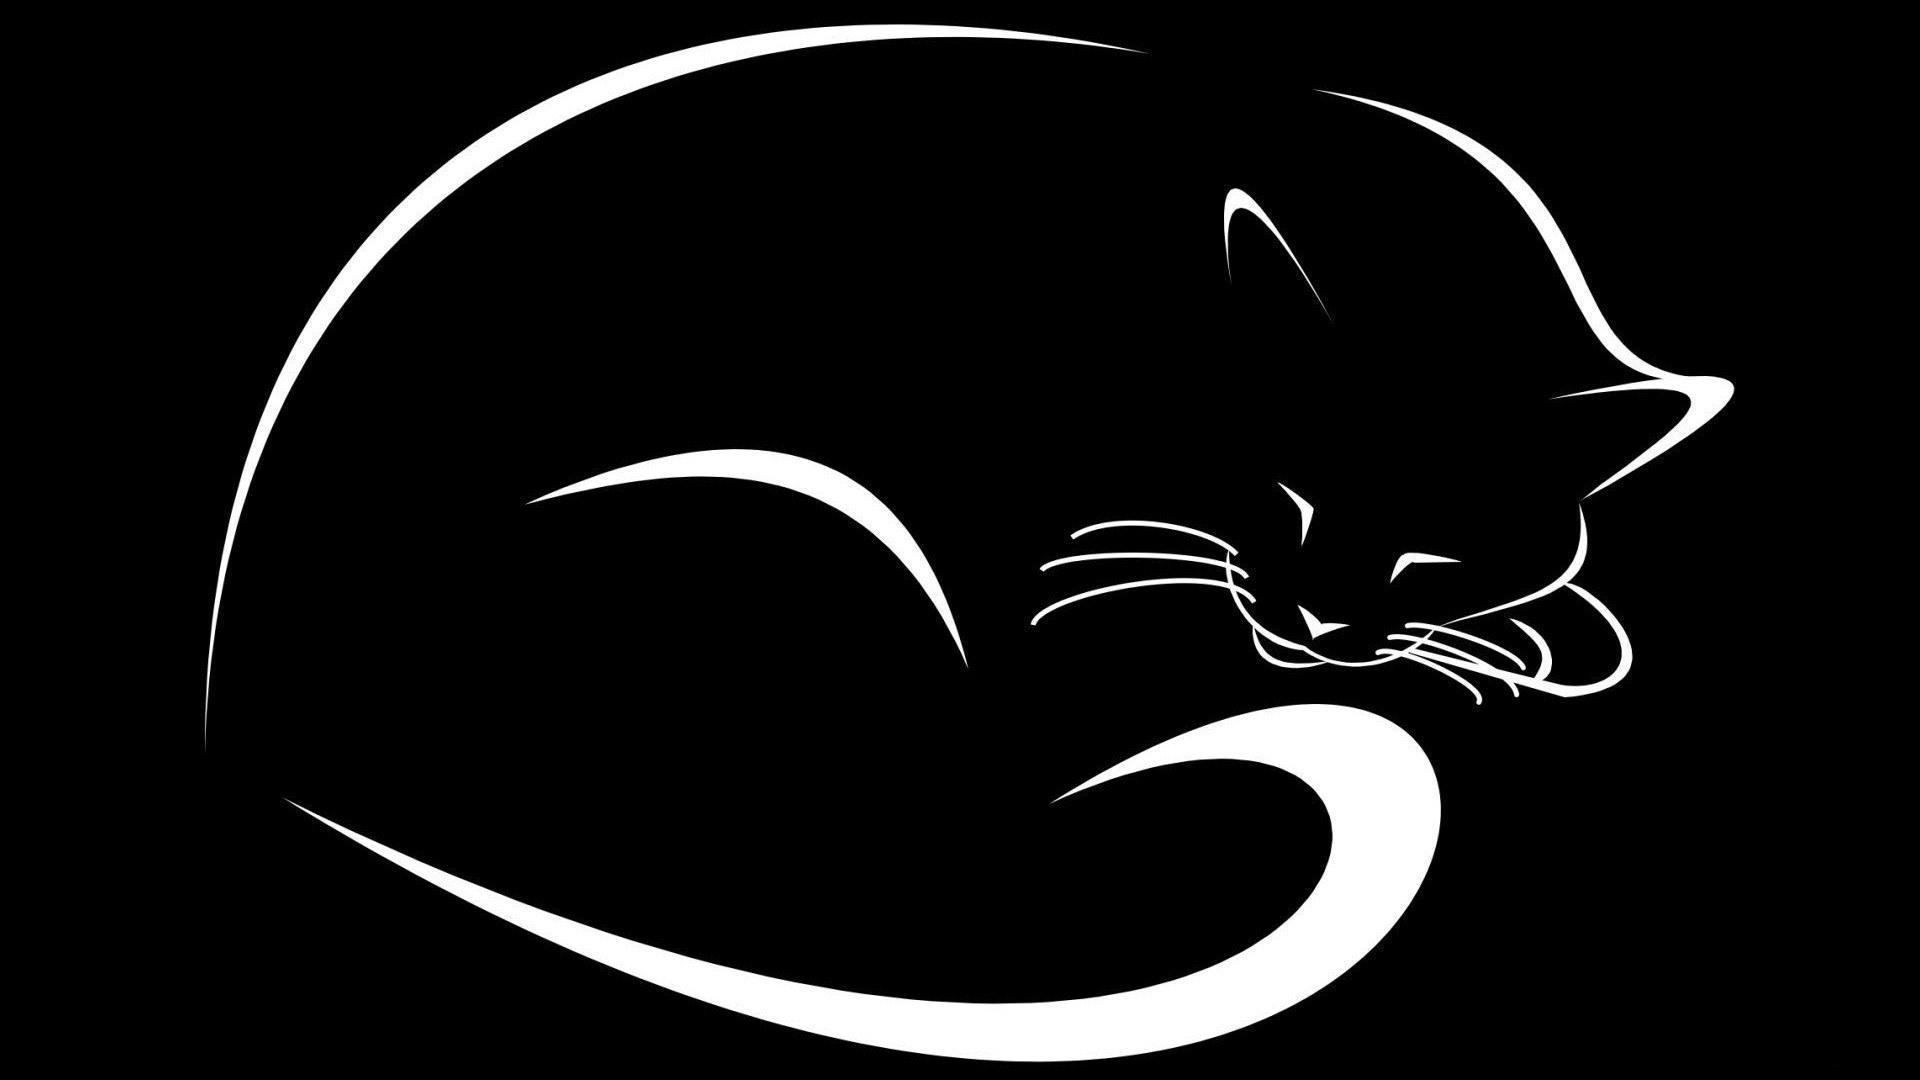 Hitam Kucing Putih Abstrak - White Cat Logo Black Background - HD Wallpaper 